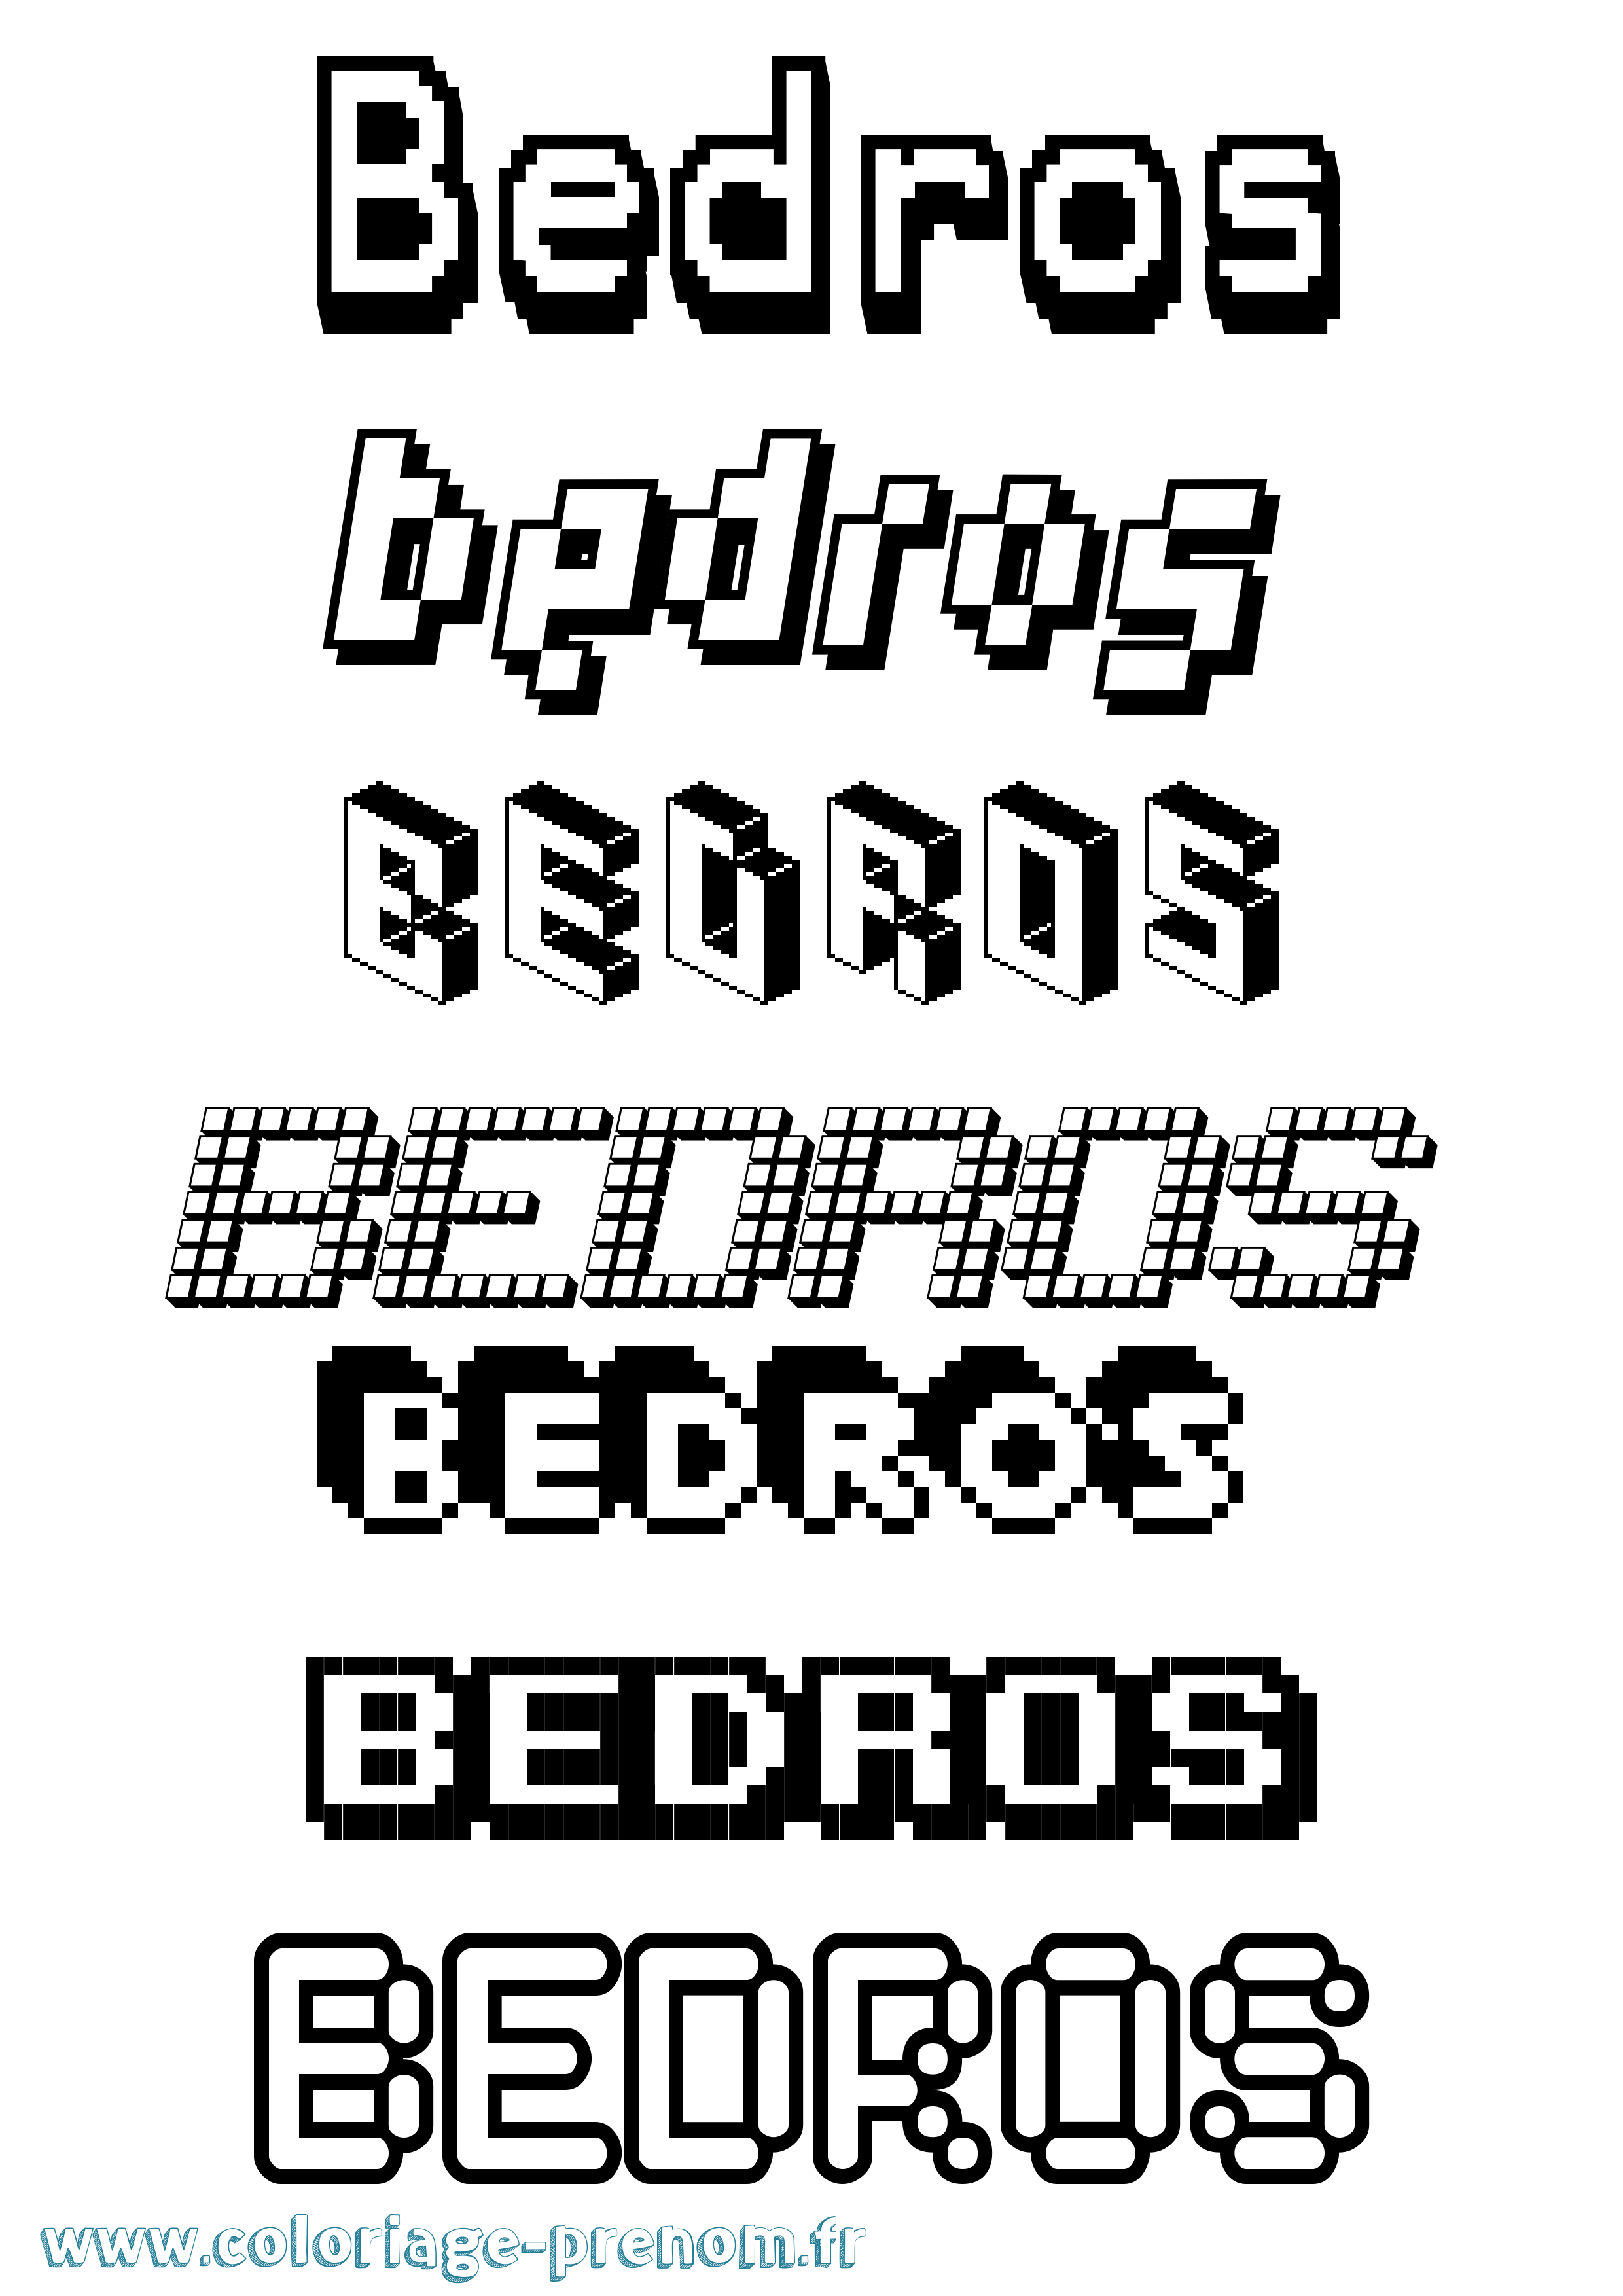 Coloriage prénom Bedros Pixel